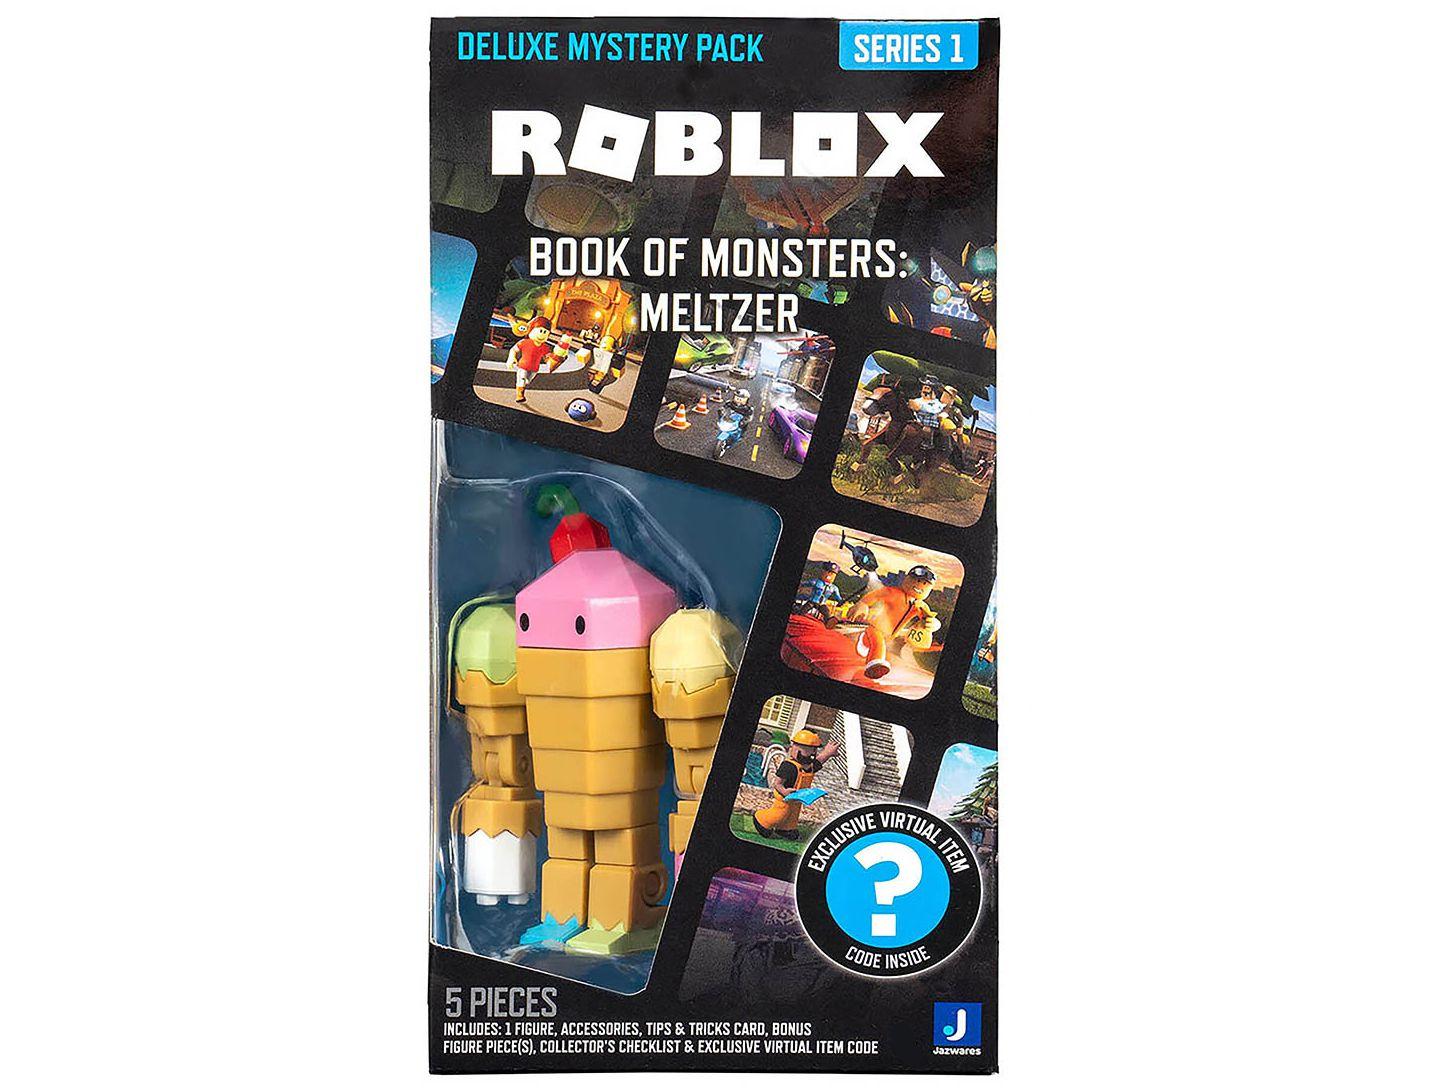 Brinquedo Roblox 5 Personagens e Acessórios